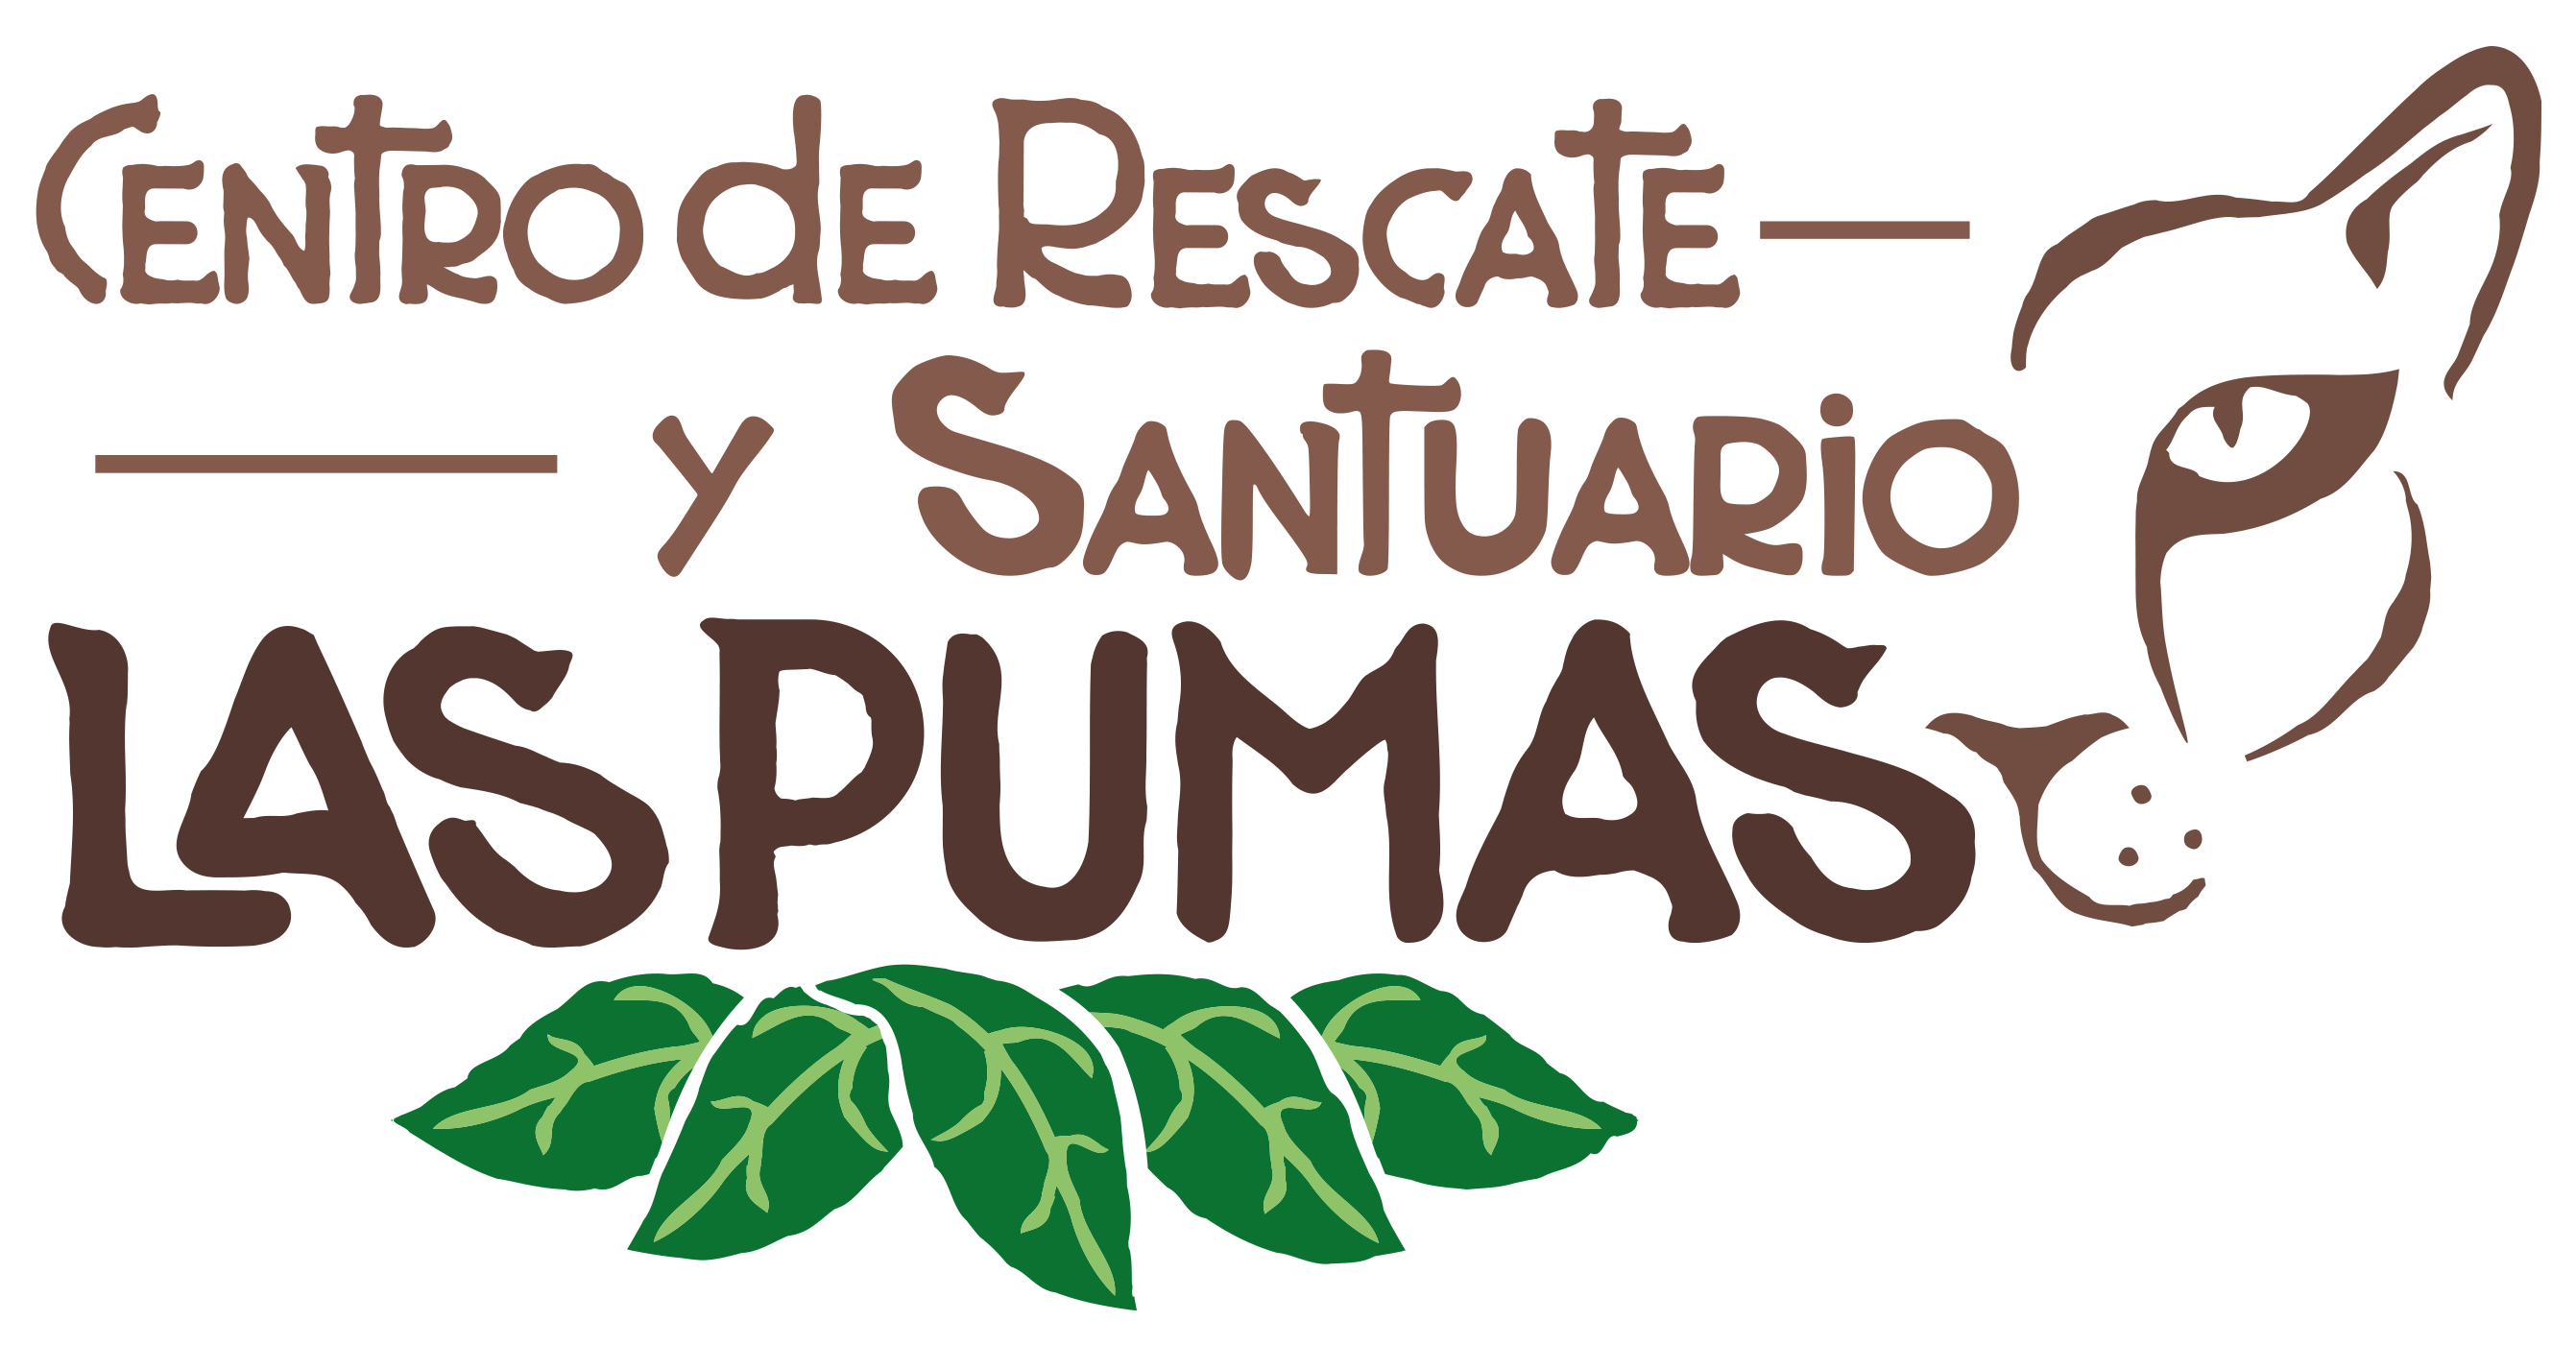 Centro de Rescate y Santuario Las Pumas